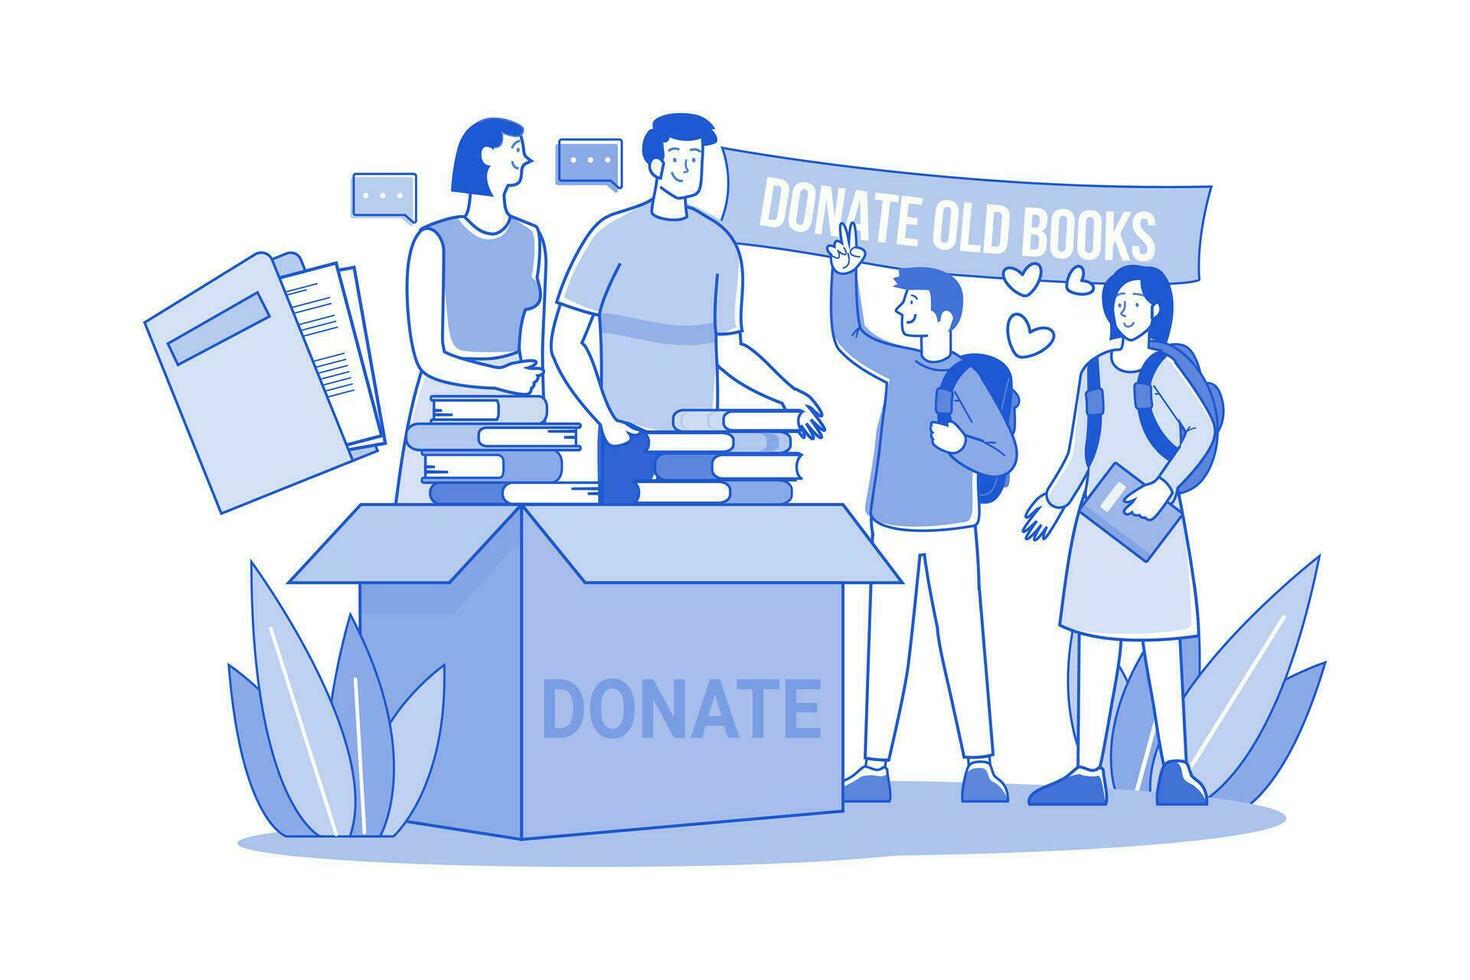 volontär- grupp donerar gammal böcker och tidningar till fattig studenter vektor